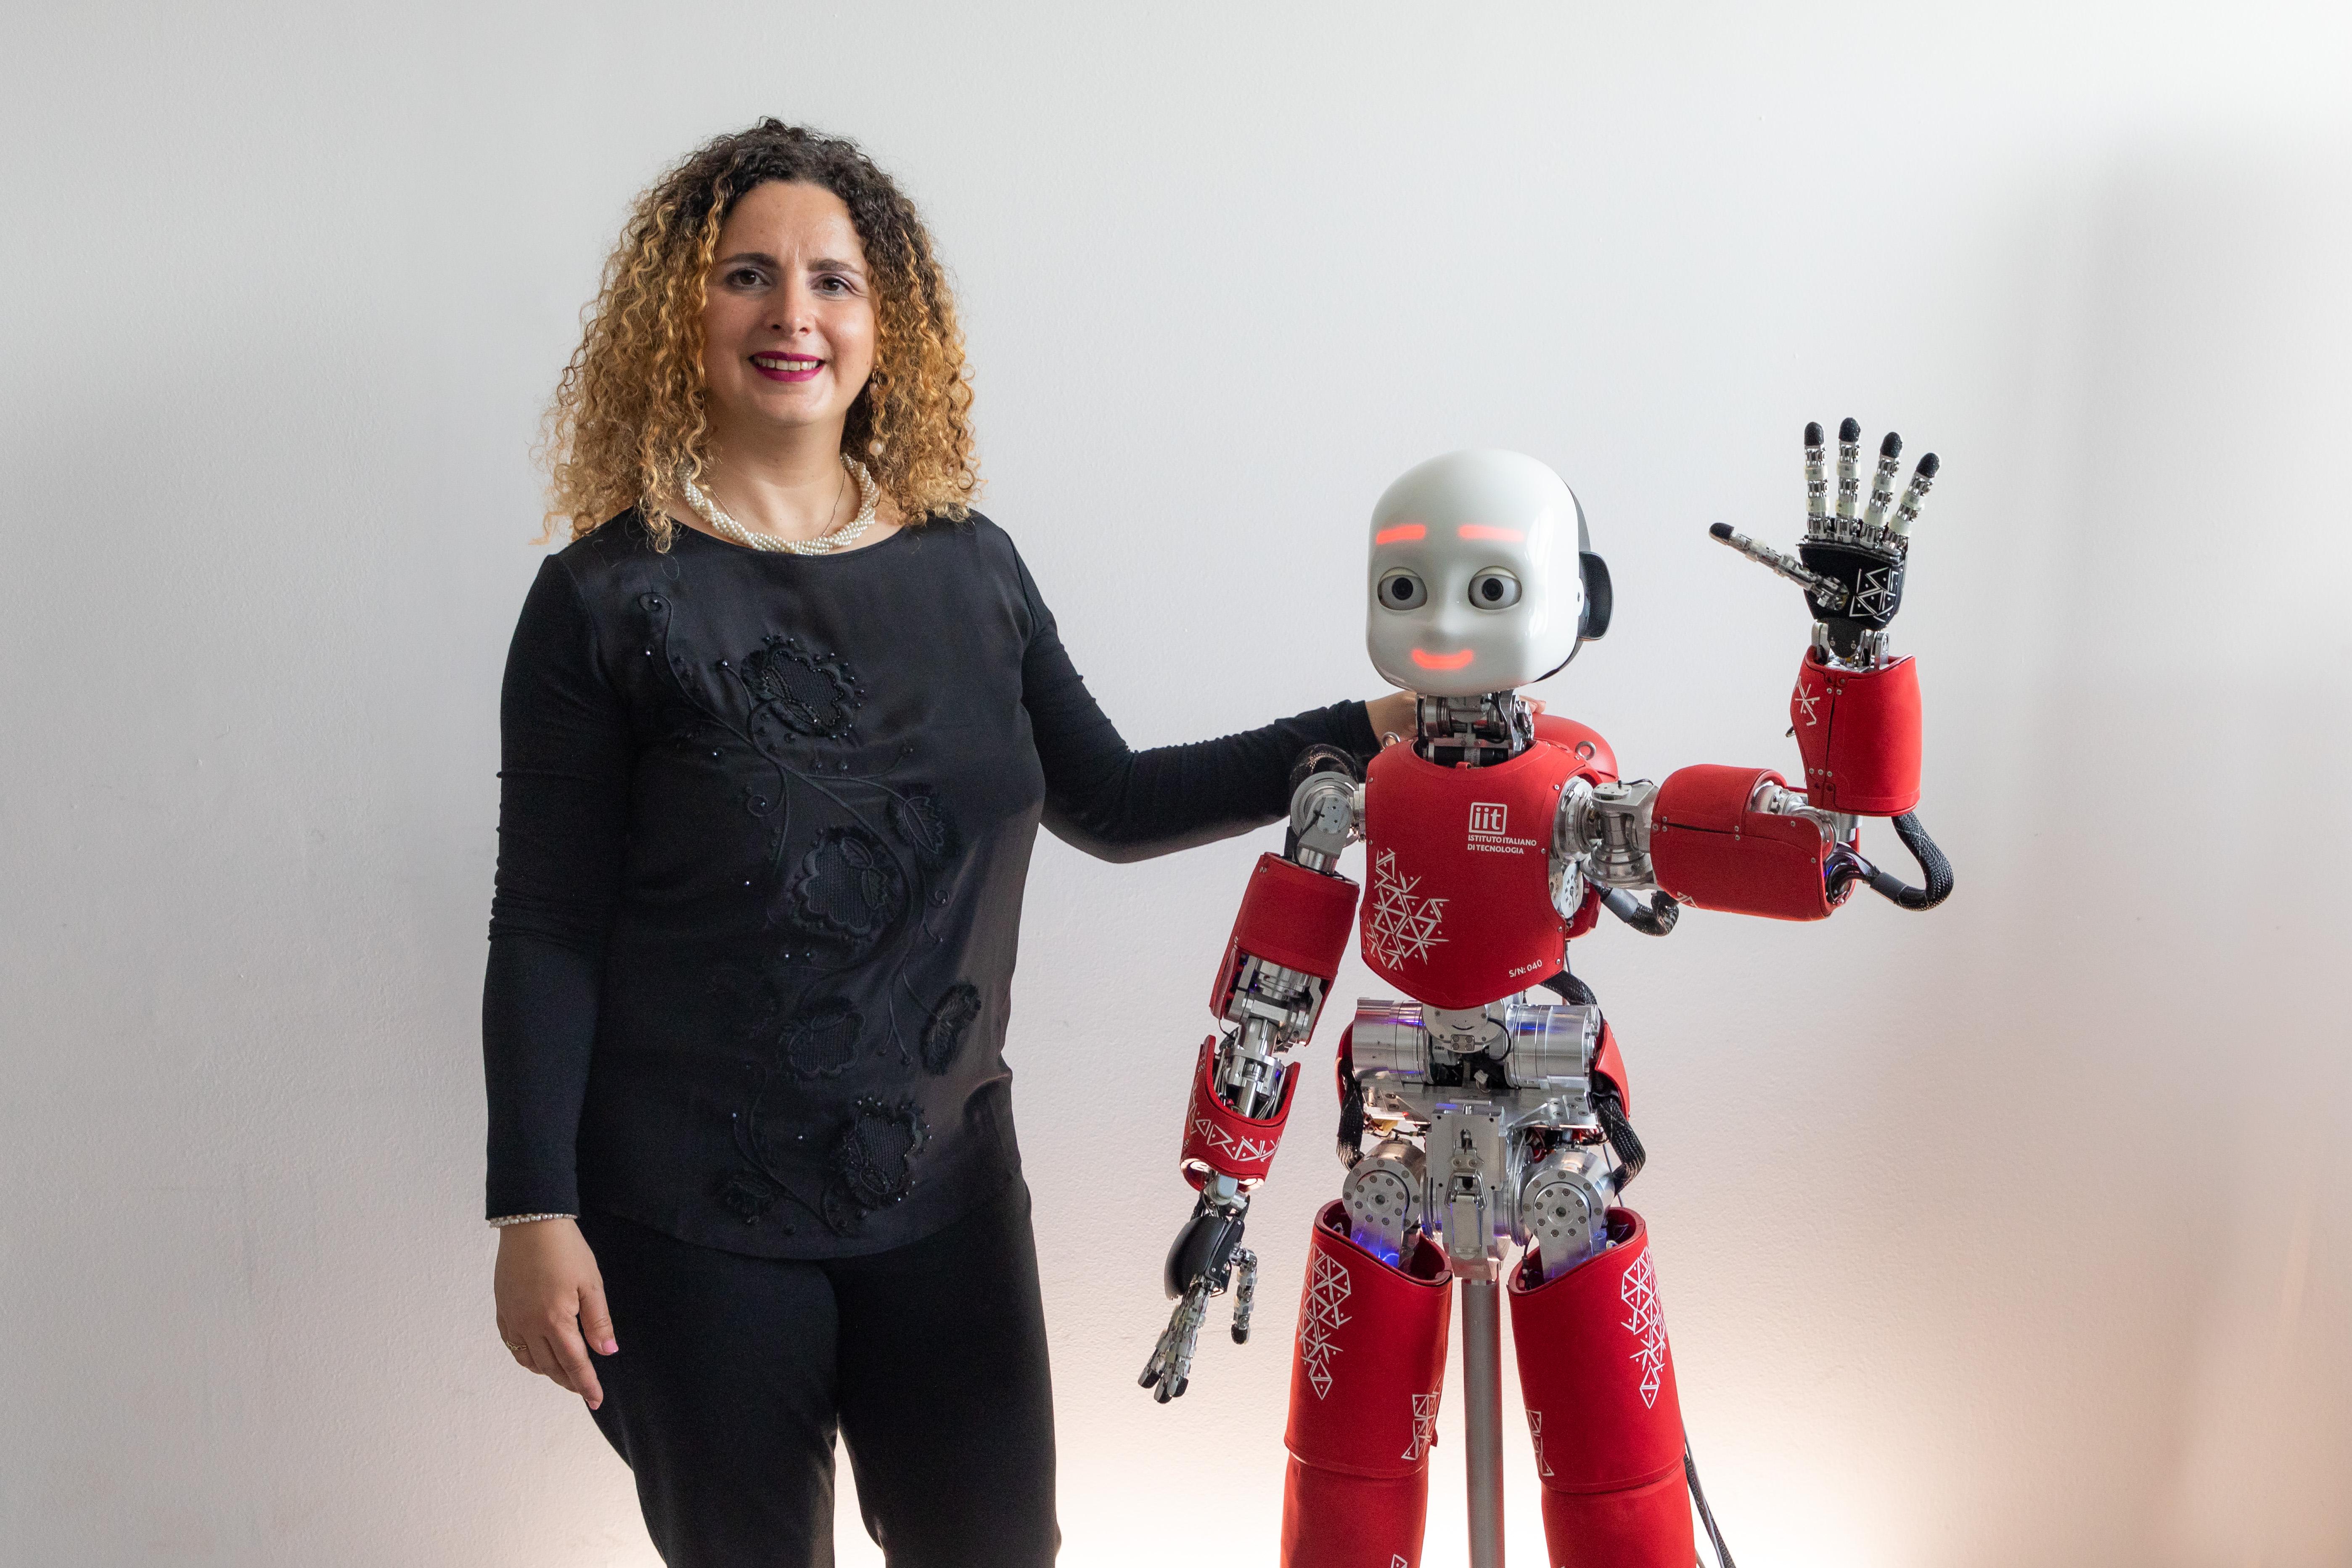 Interazione tra robot ed esseri umani: perche’ studiarla?